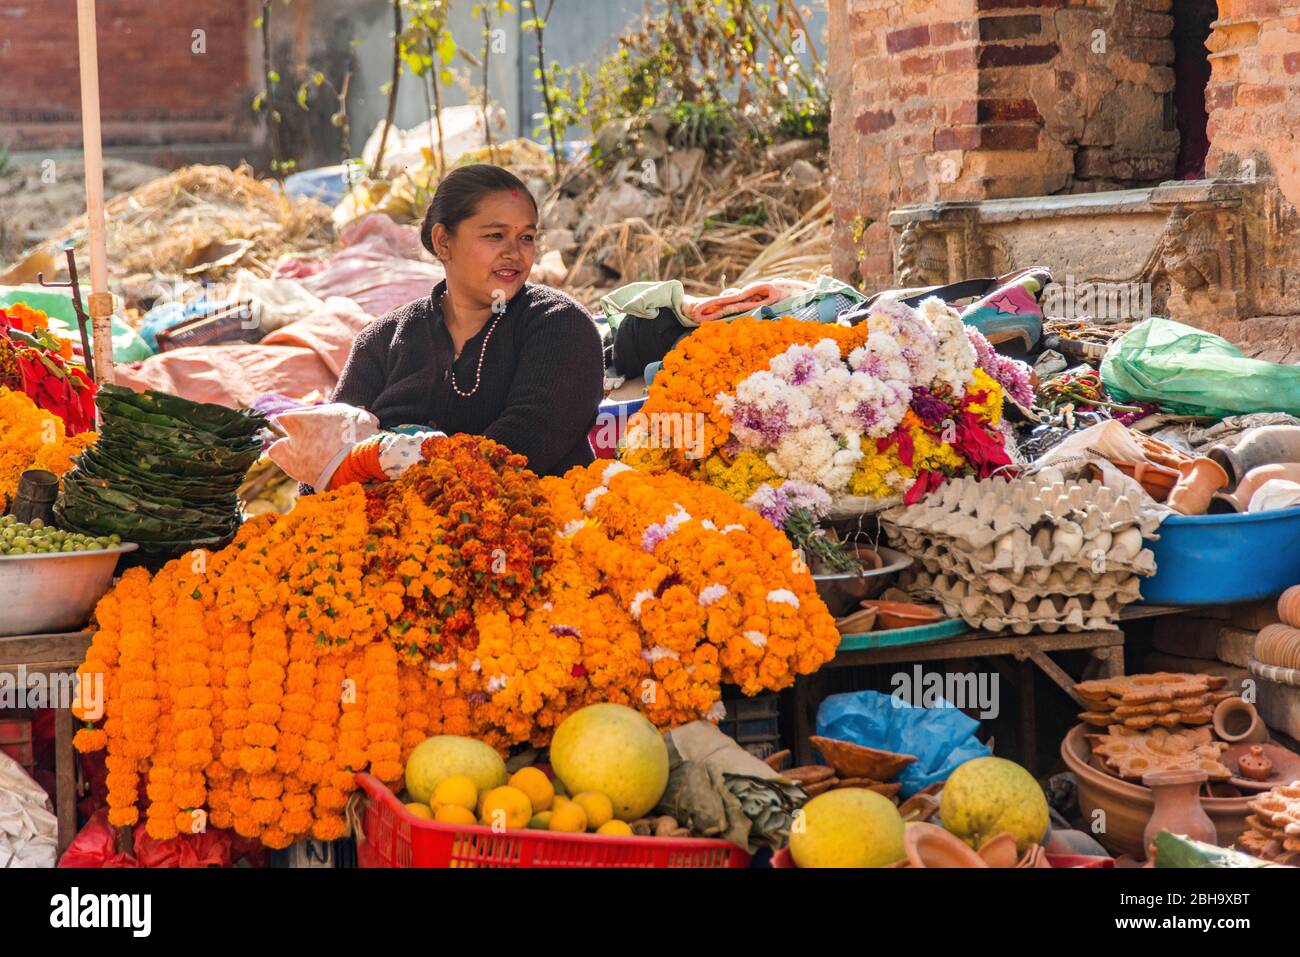 Mujer en el puesto del mercado, 20-30 años de edad, puesto de verduras Foto de stock